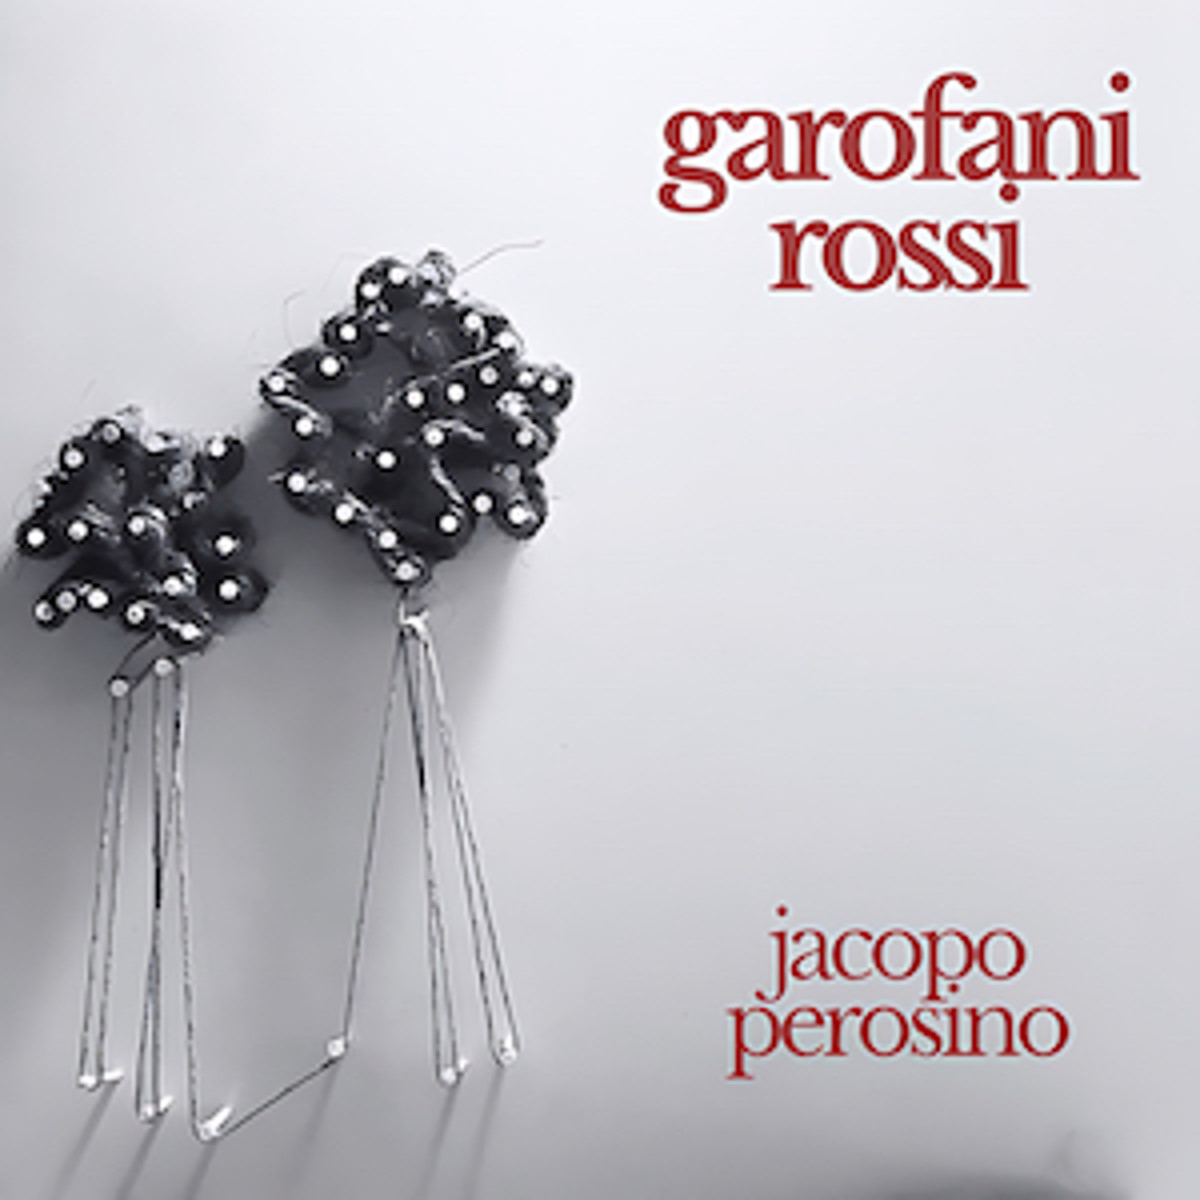 Jacopo Perosino - “Garofani rossi”